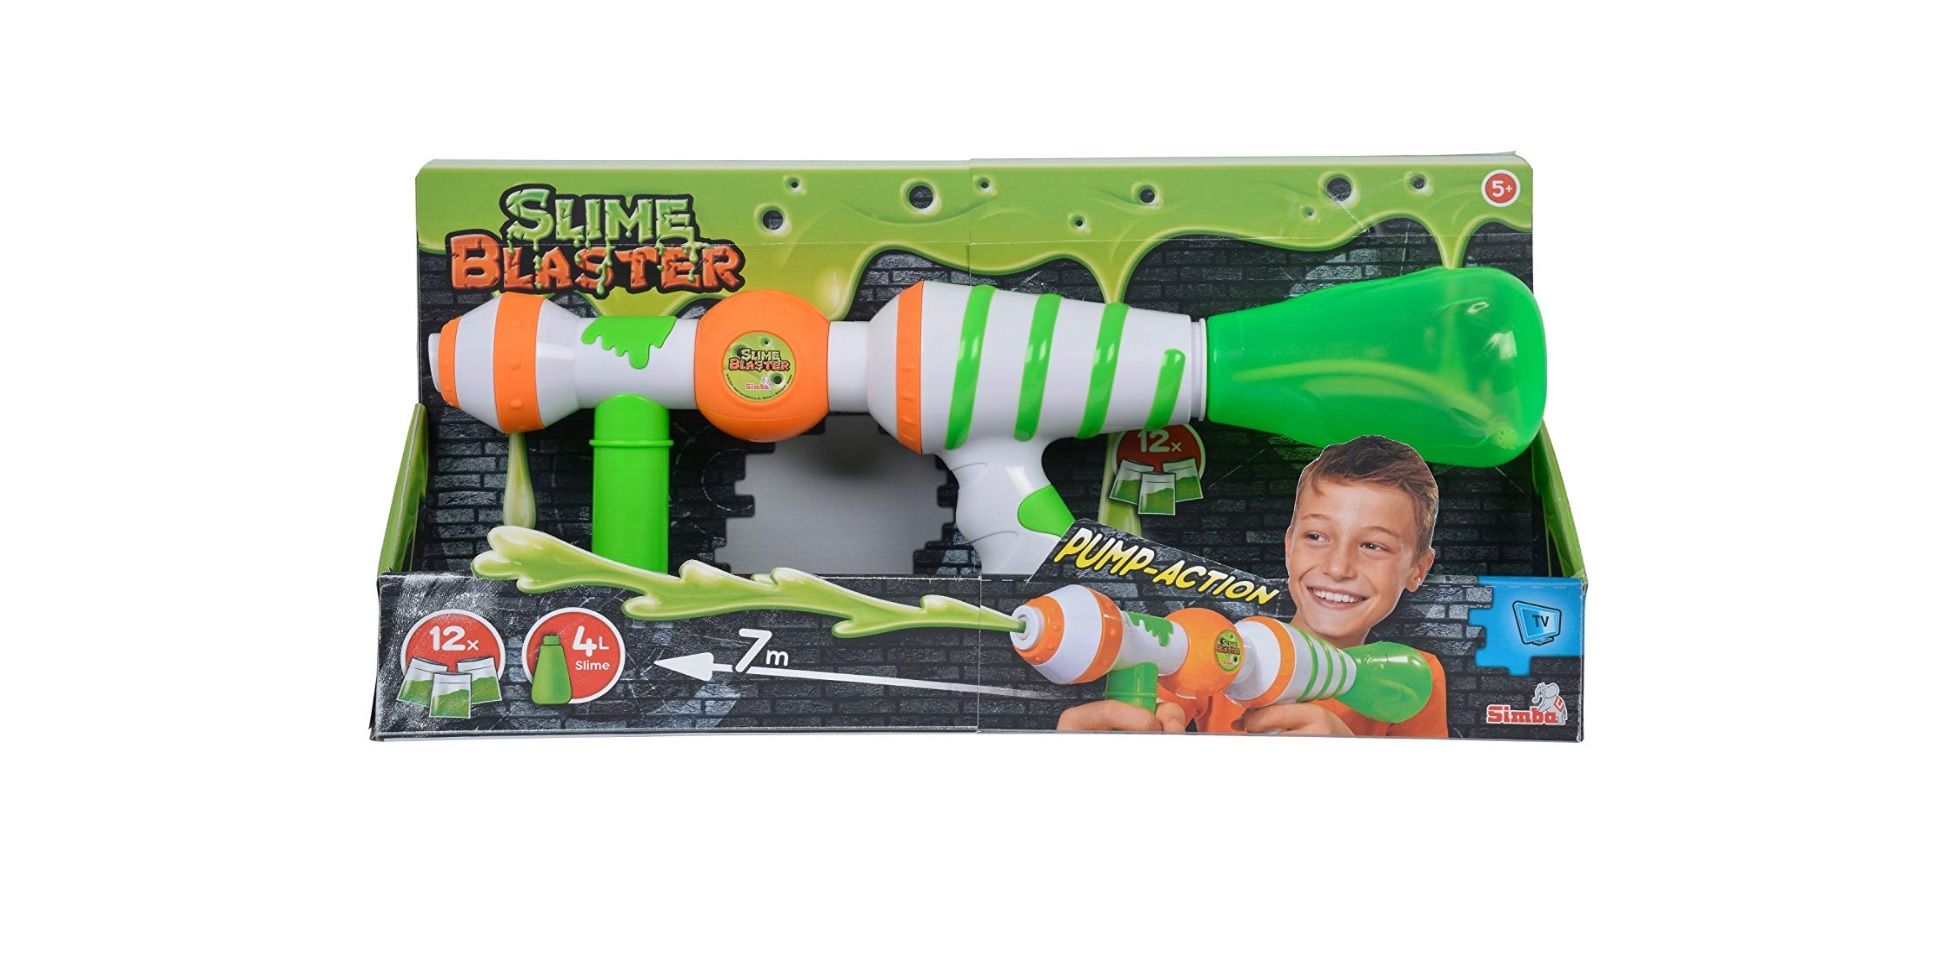 ¡Chollazo! Slime Blaster-5952025 Lanzador de moco por sólo 9,99€ (antes 23,94€)